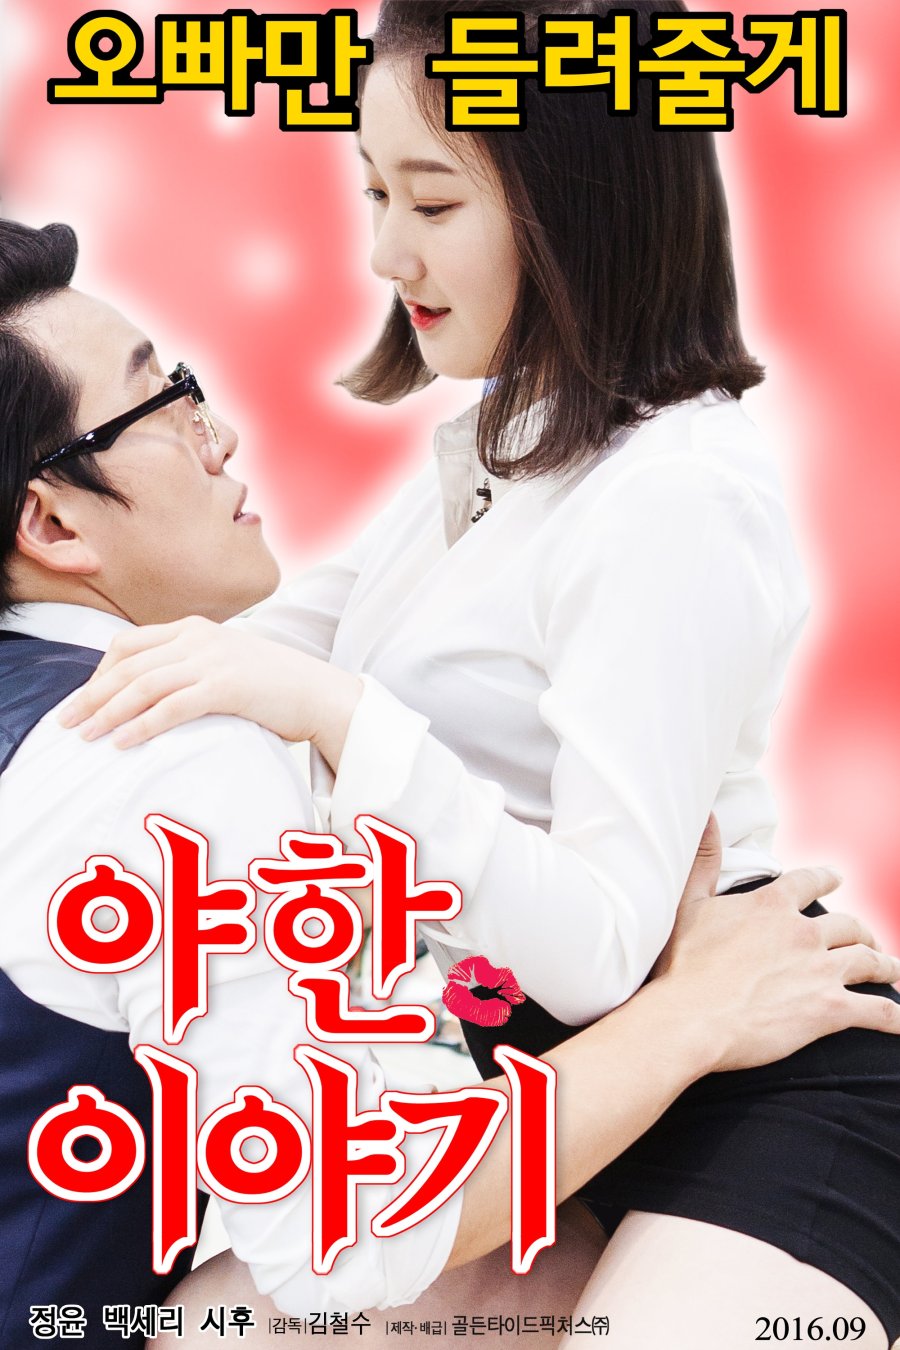 brittney pierson add korean erotic movies 2016 photo